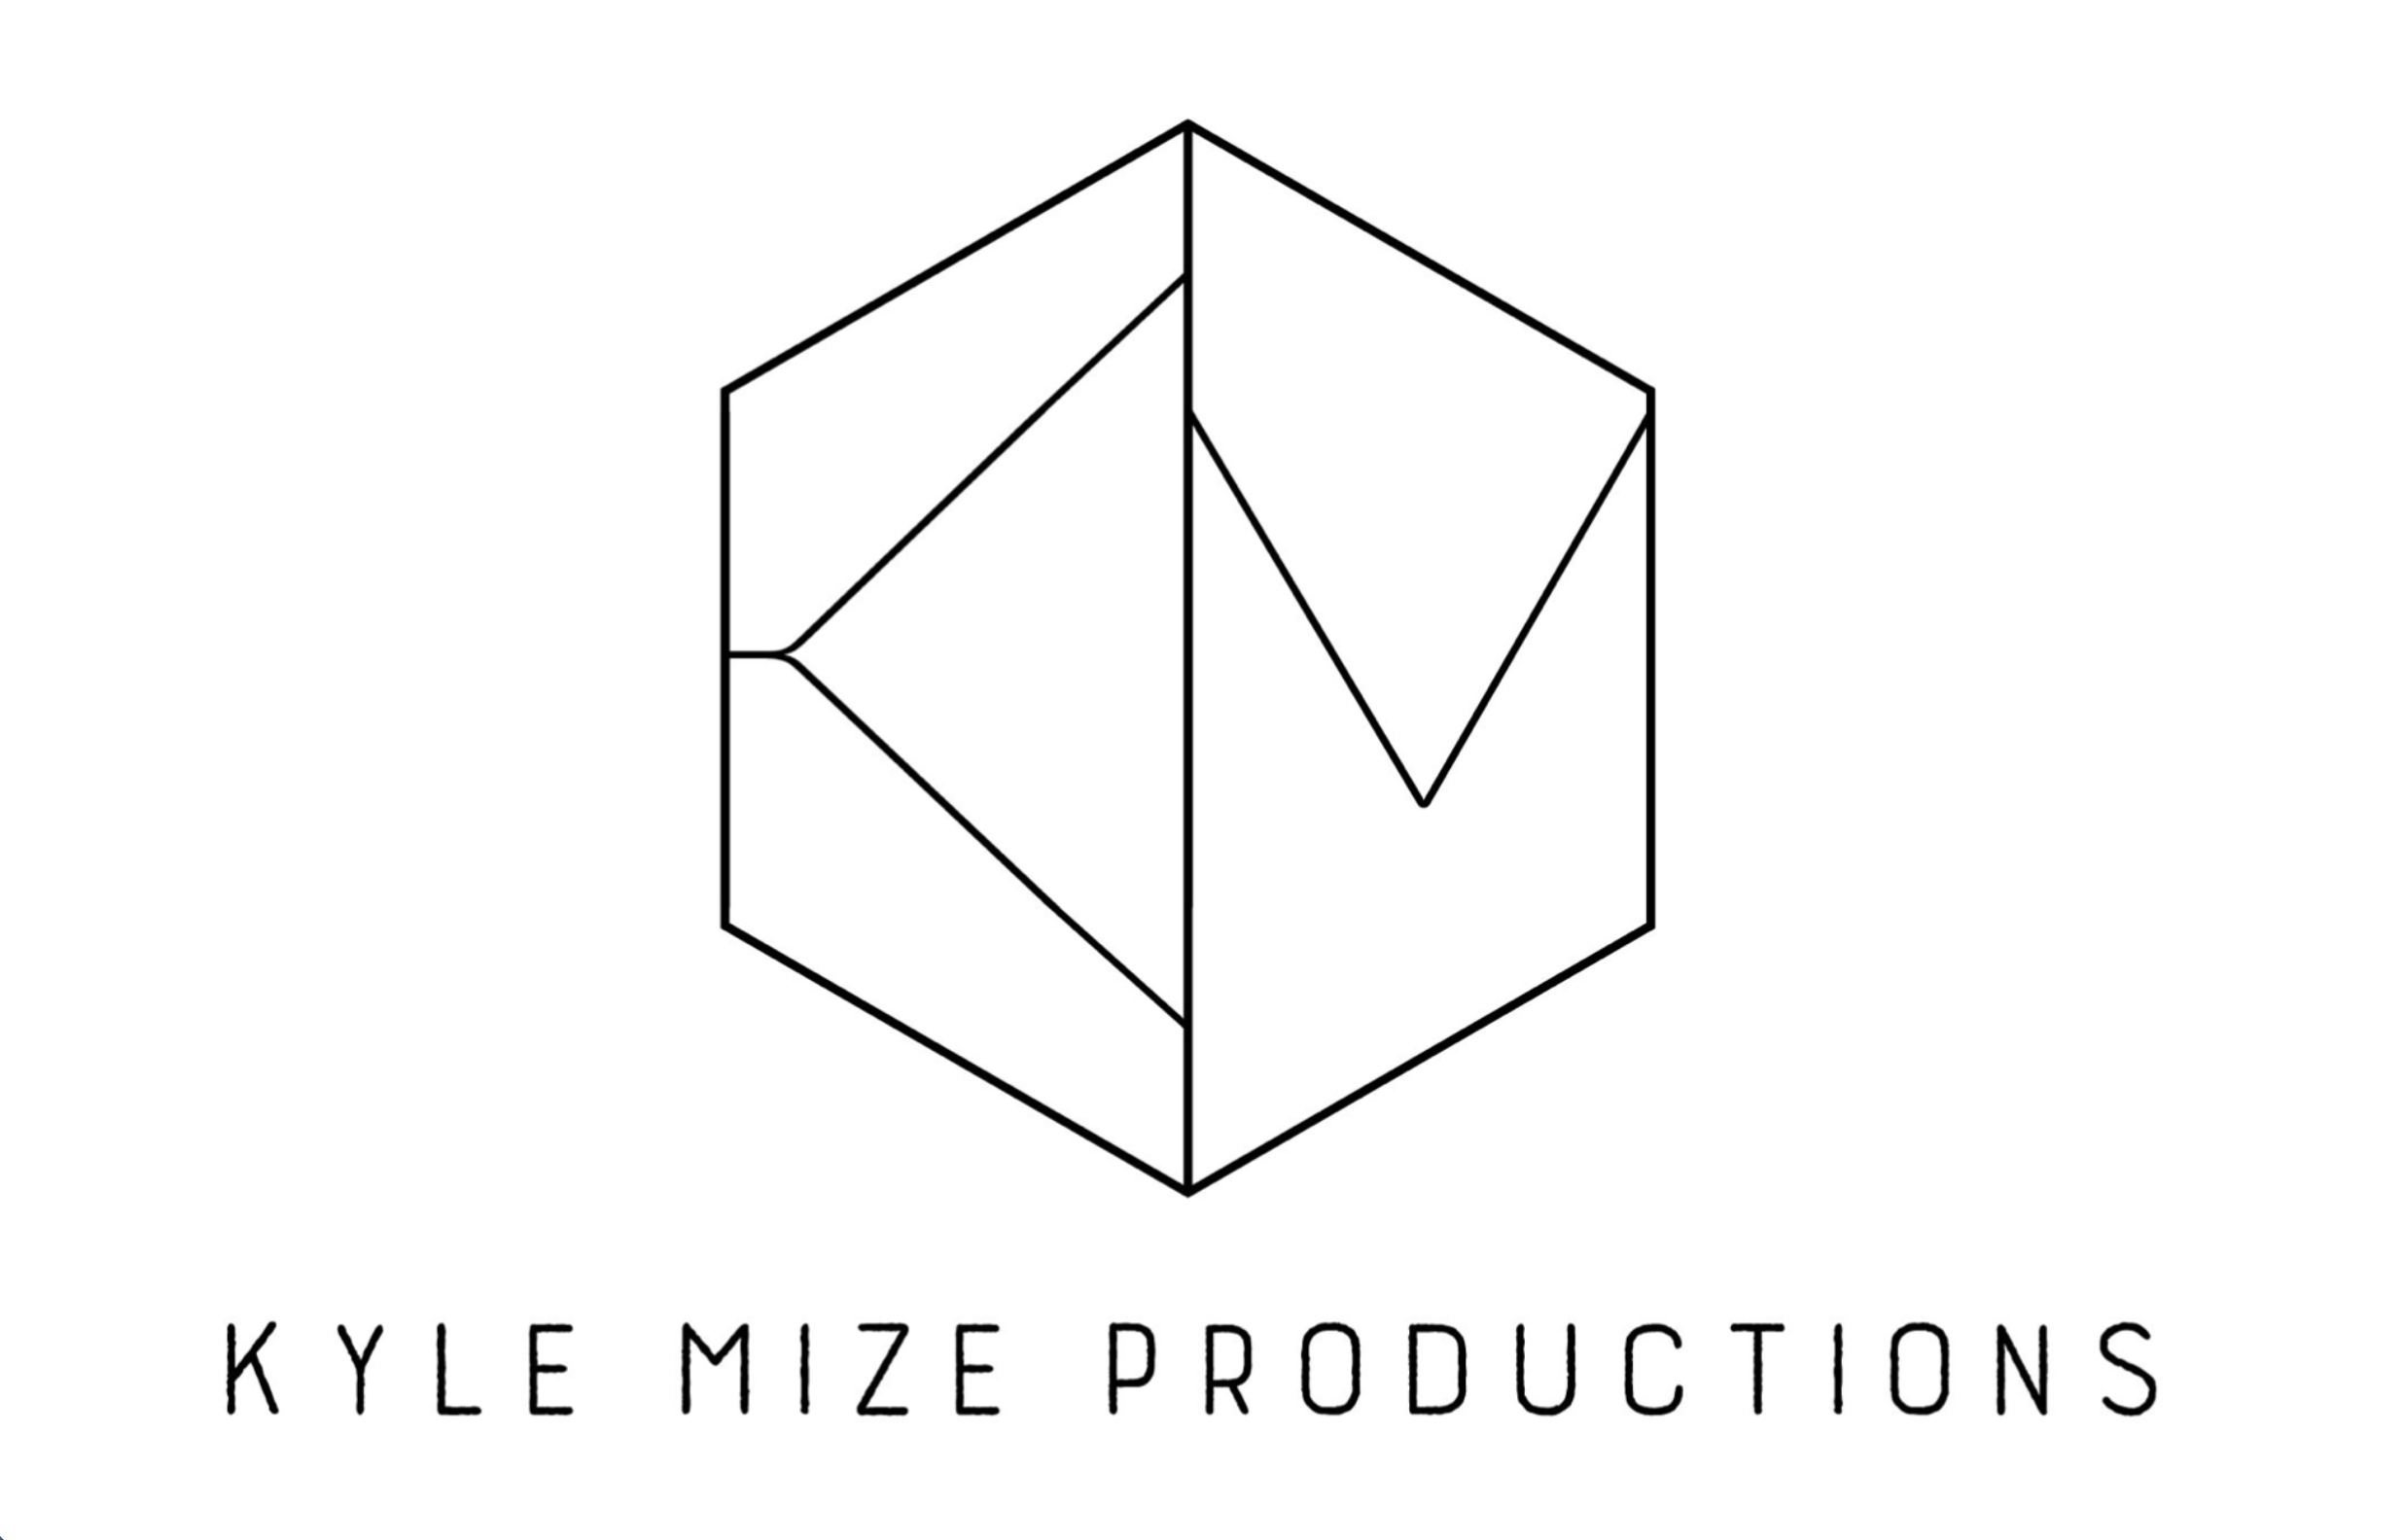 Kyle Mize Productions